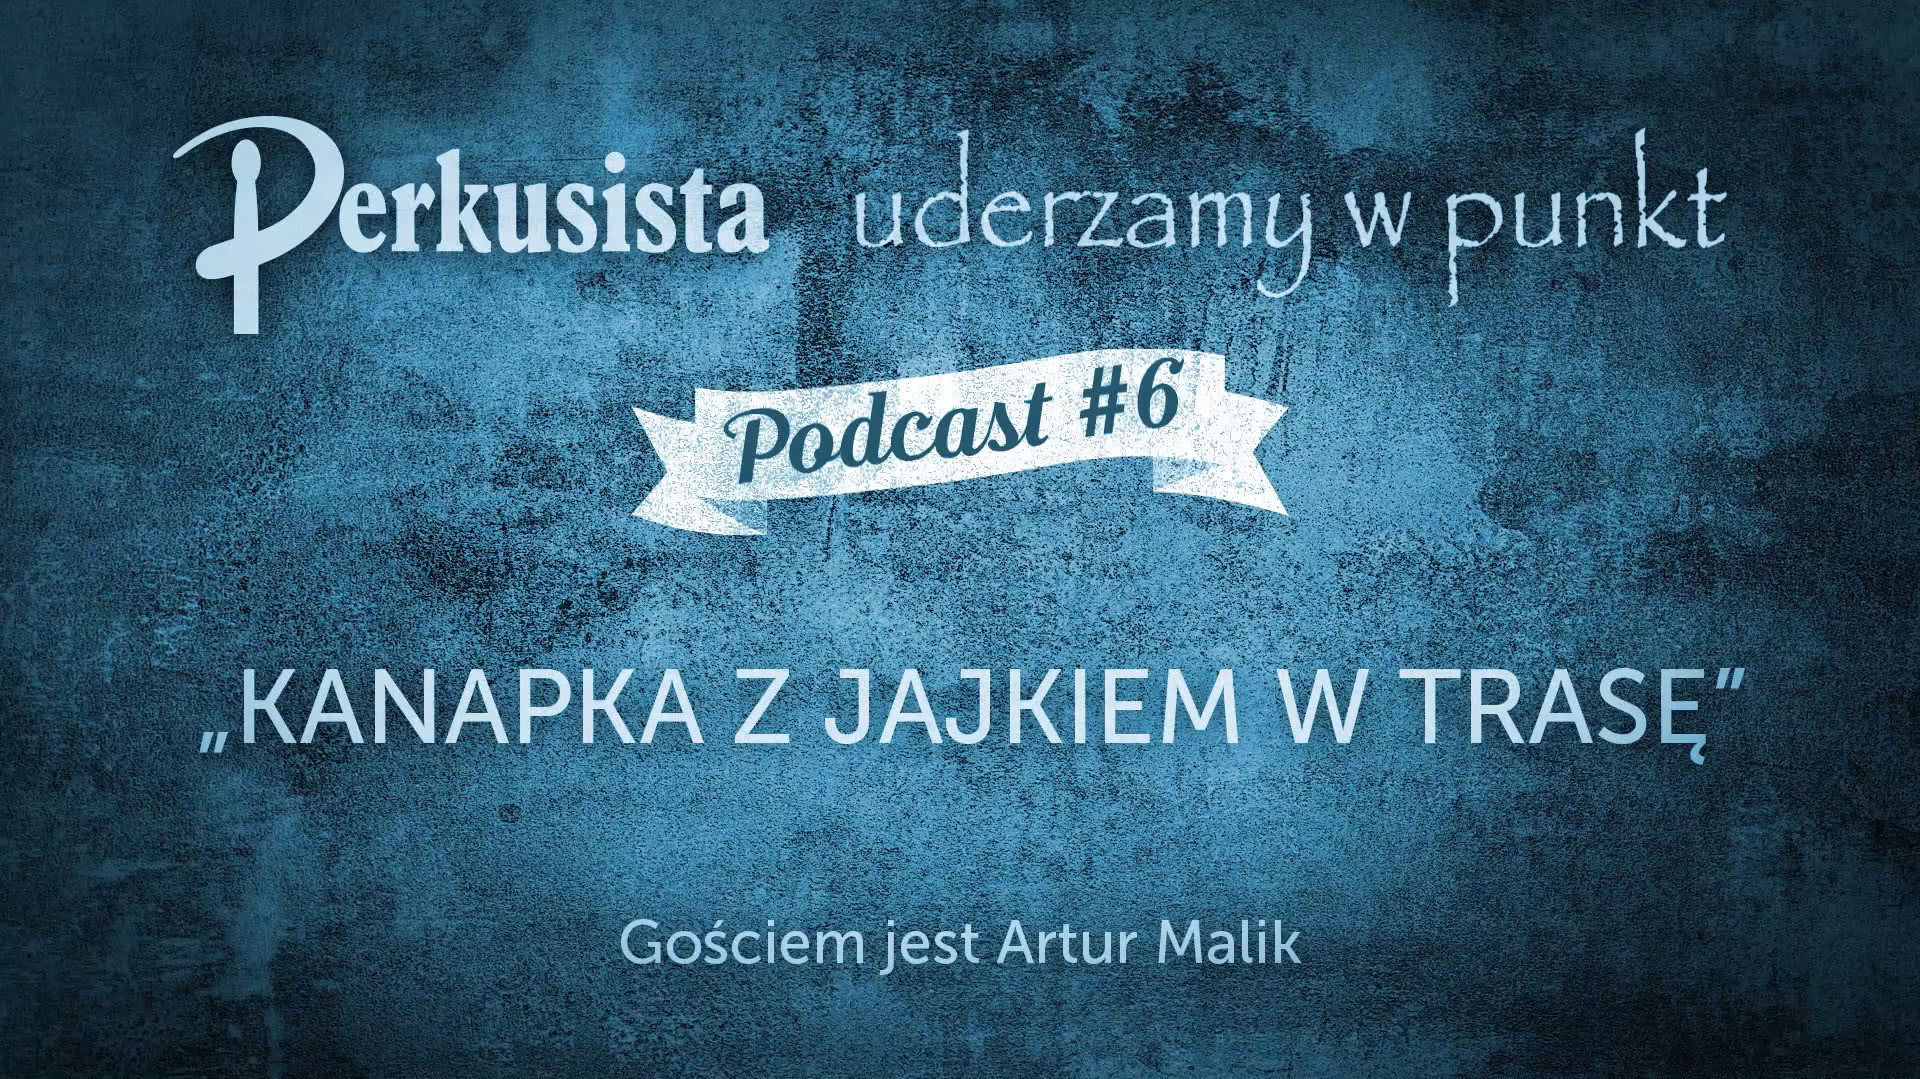 Drum Podcast #6 - Kanapka z jajkiem w trasę/Artur Malik 